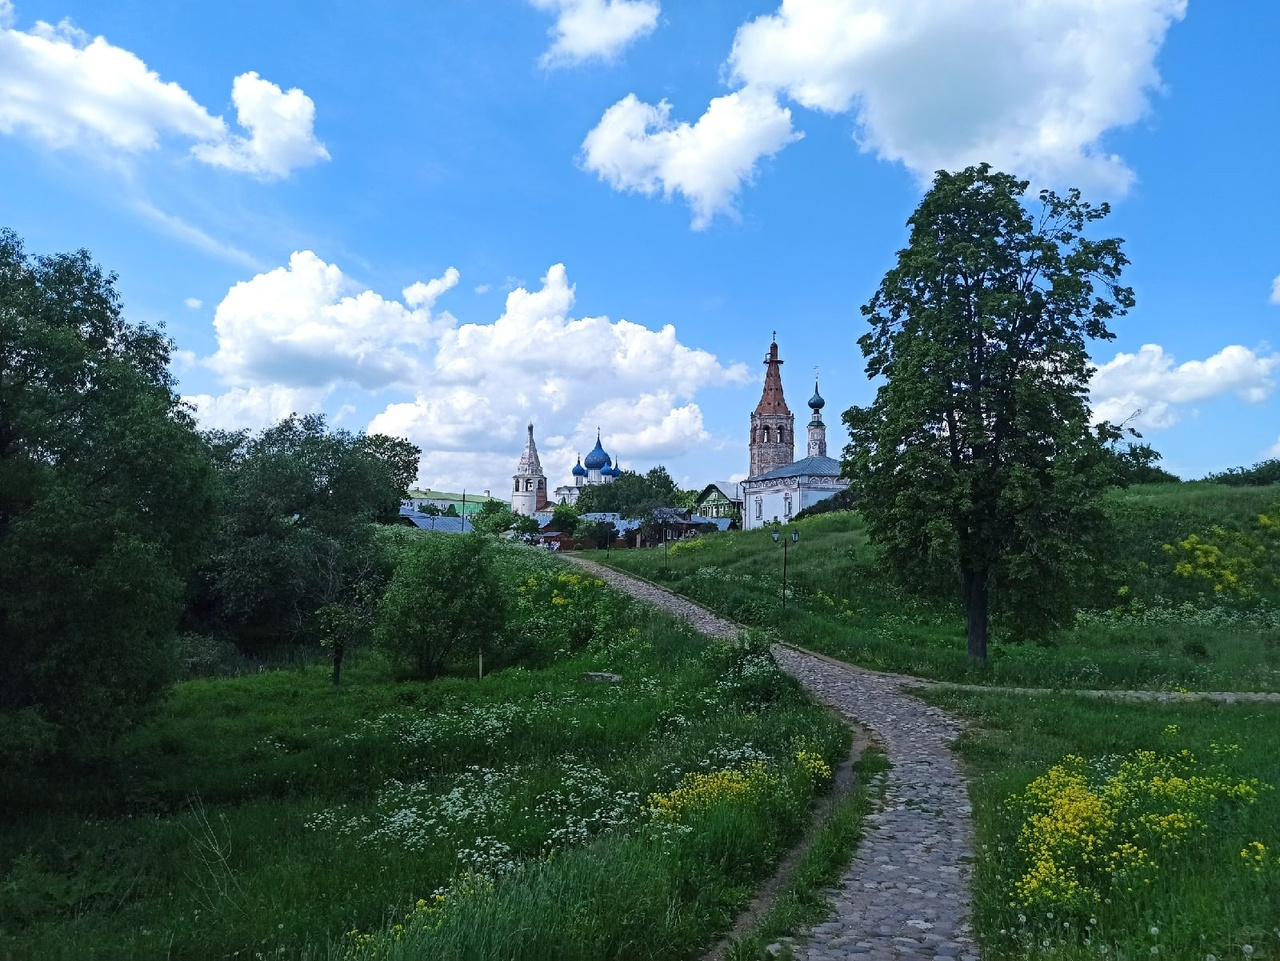 Суздаль — древний русский город с множеством старинных храмов